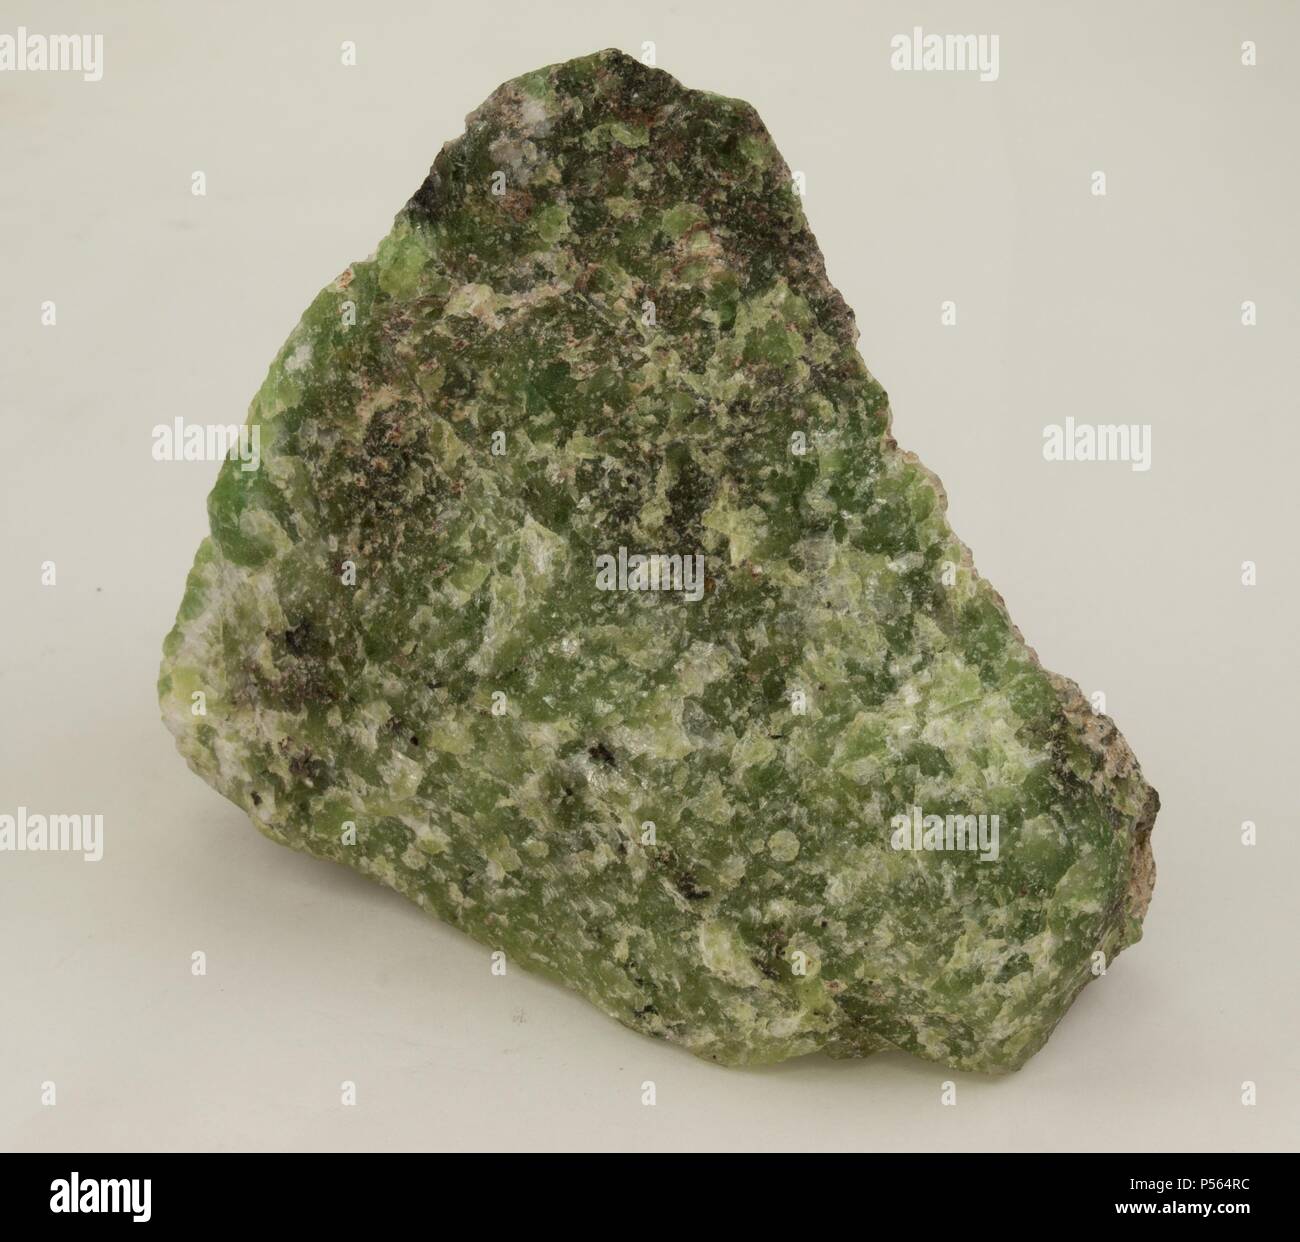 SODALITA. Mineral del grupo VII (silicatos). Ejemplar procedente de Groenlandia. Stock Photo